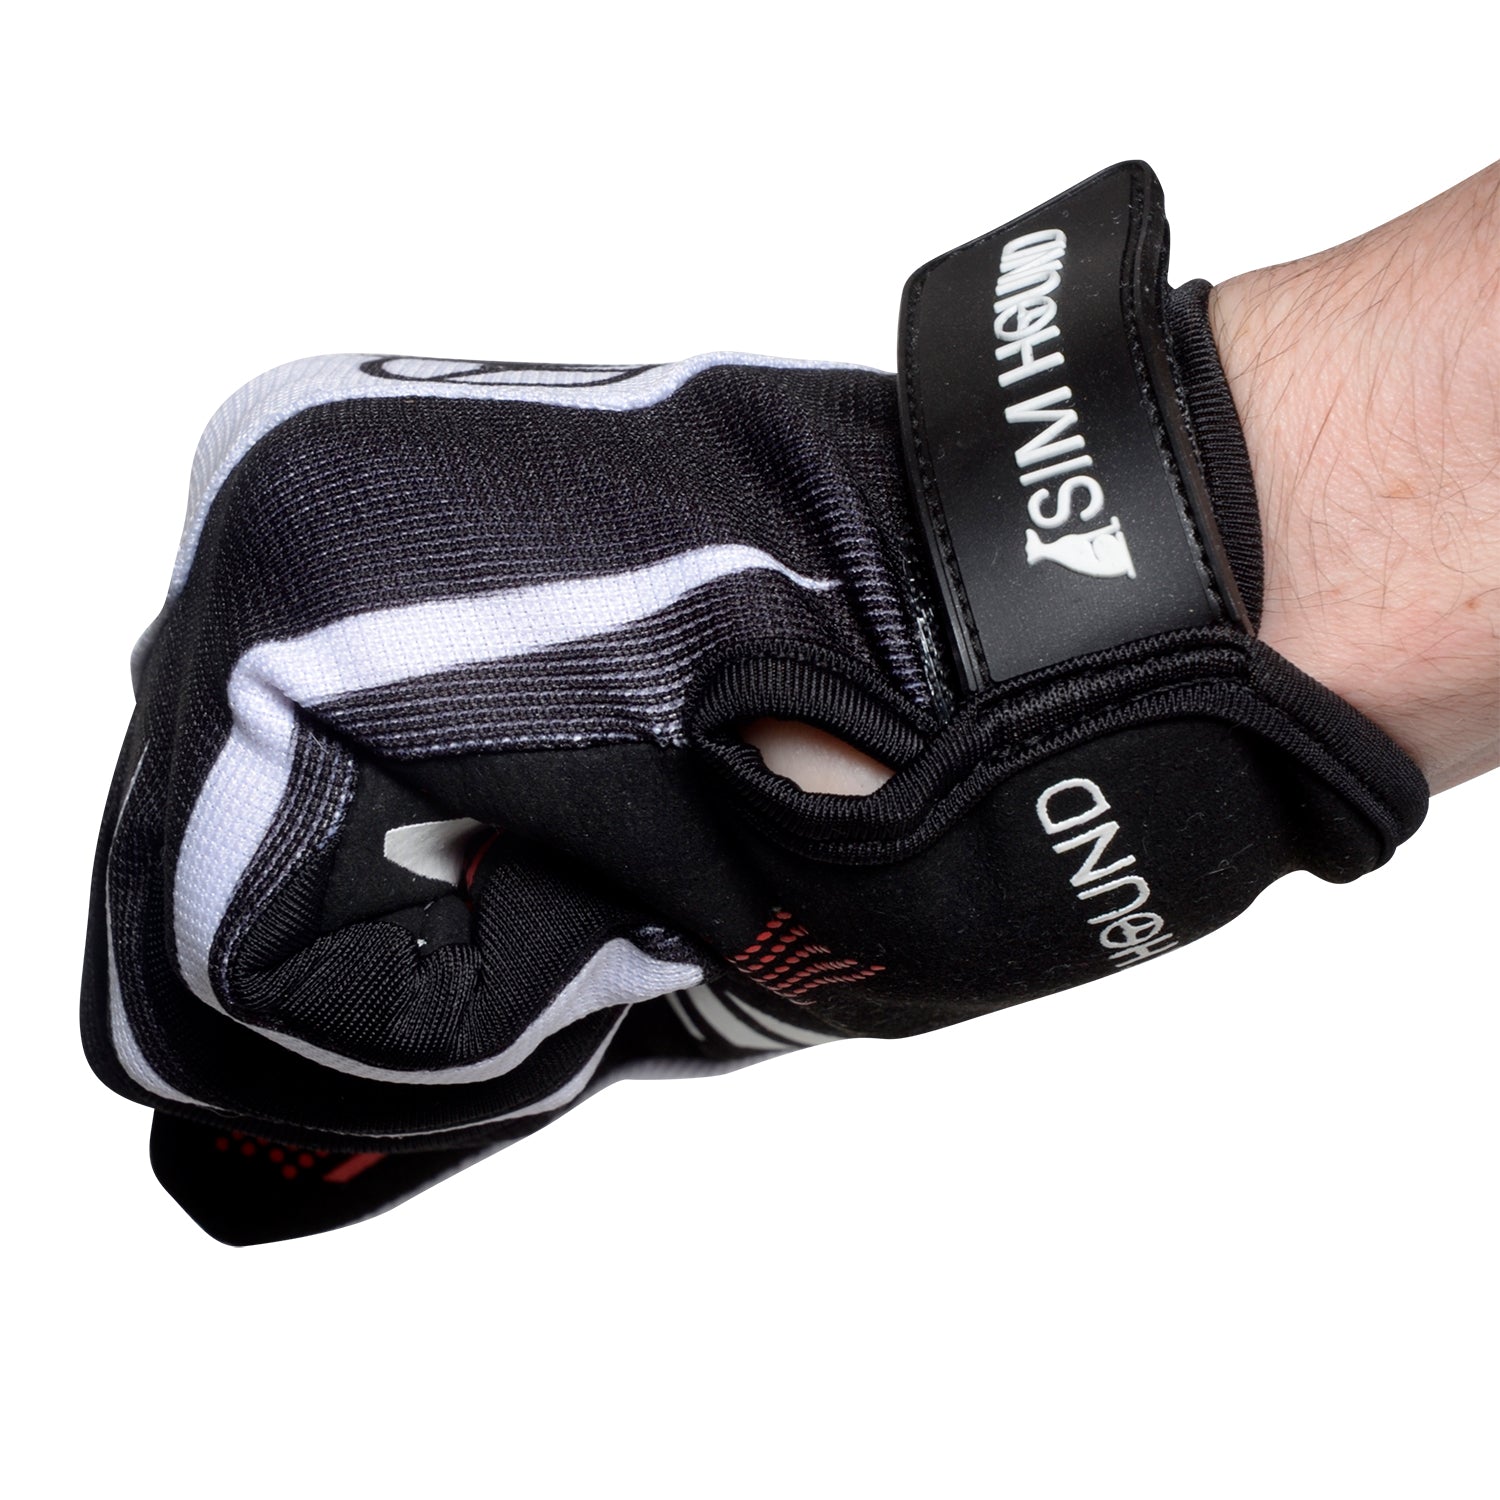 Sim Hound Gloves - Black & White